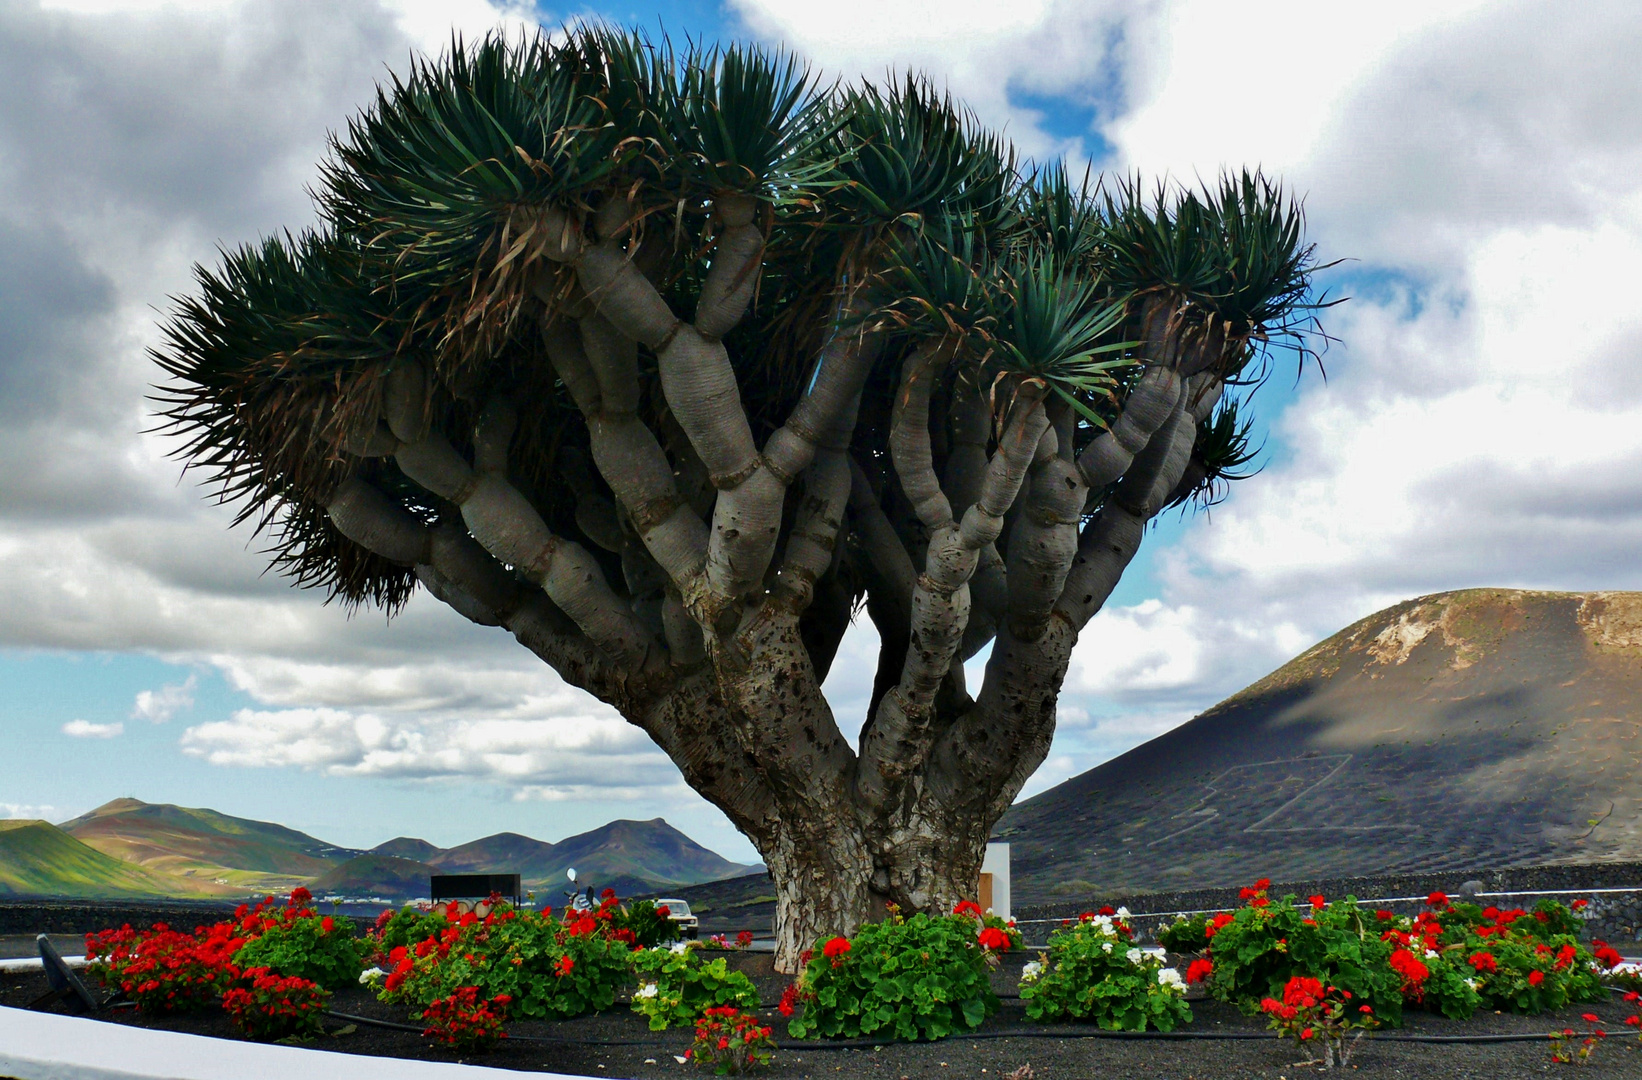 Lanzarote 2019 (14) - Prachtexemplar des Drachenbaums